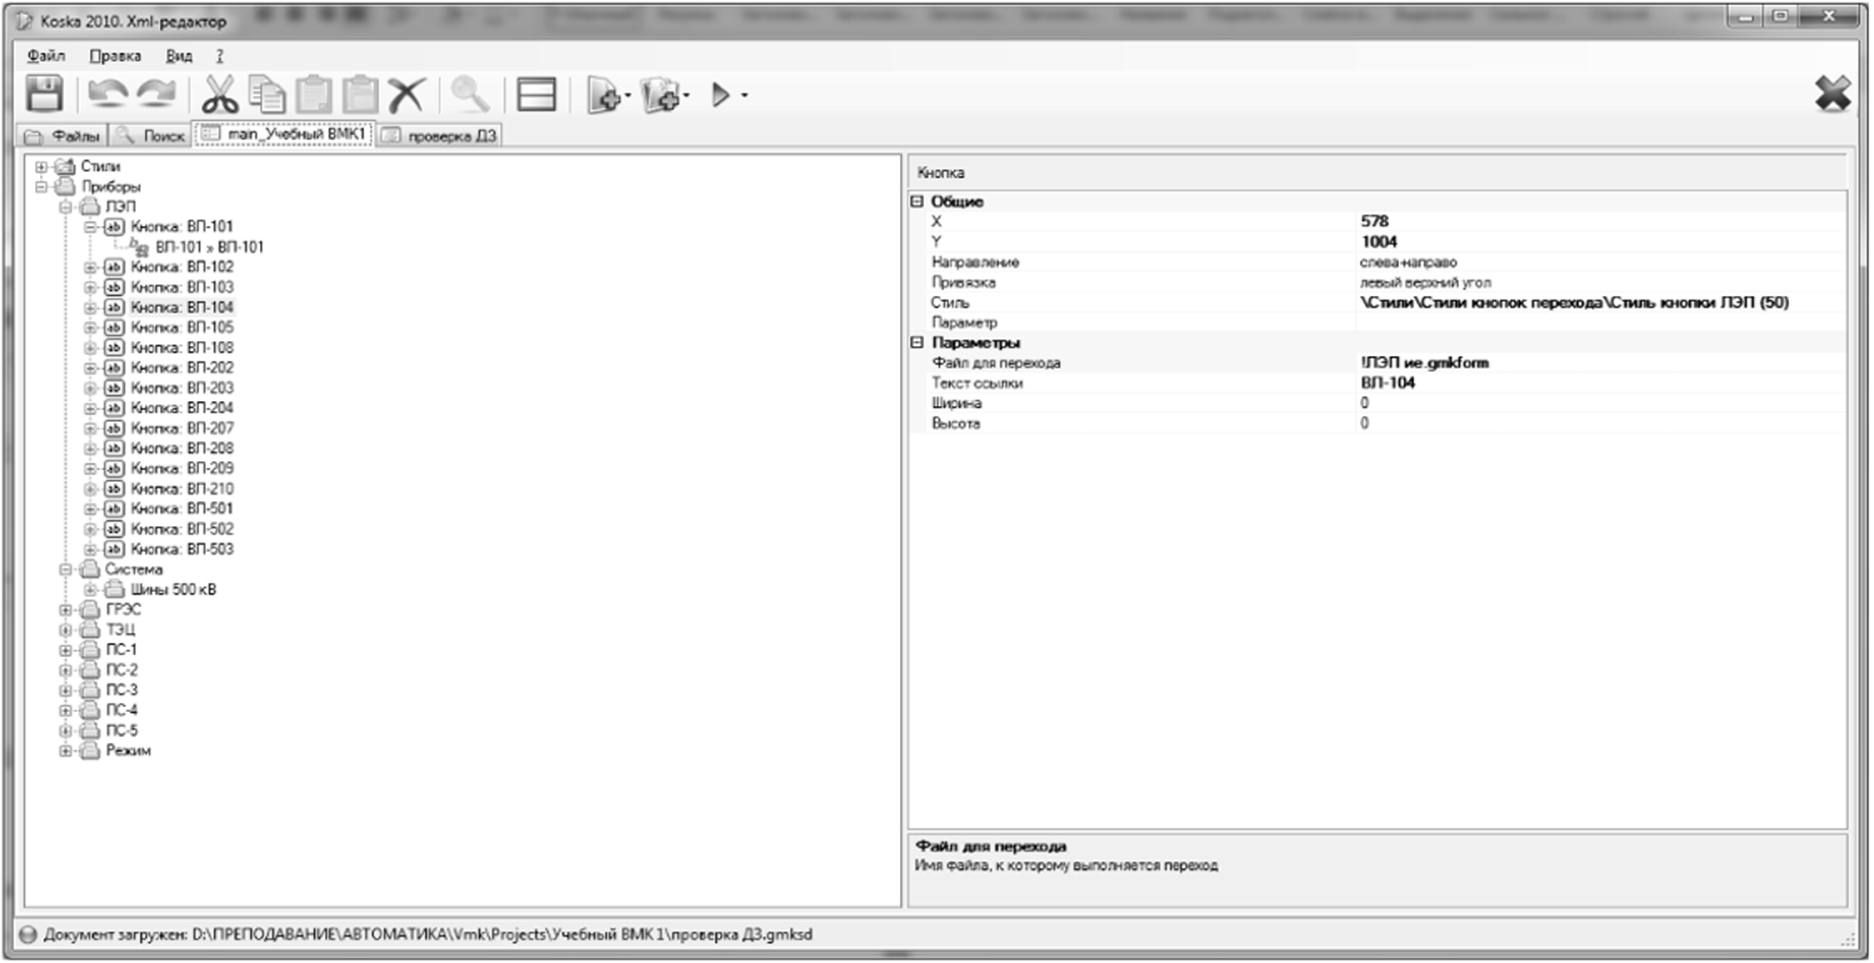 Интерфейс редактора KoskaXmlEditor2010 (пример для формы).